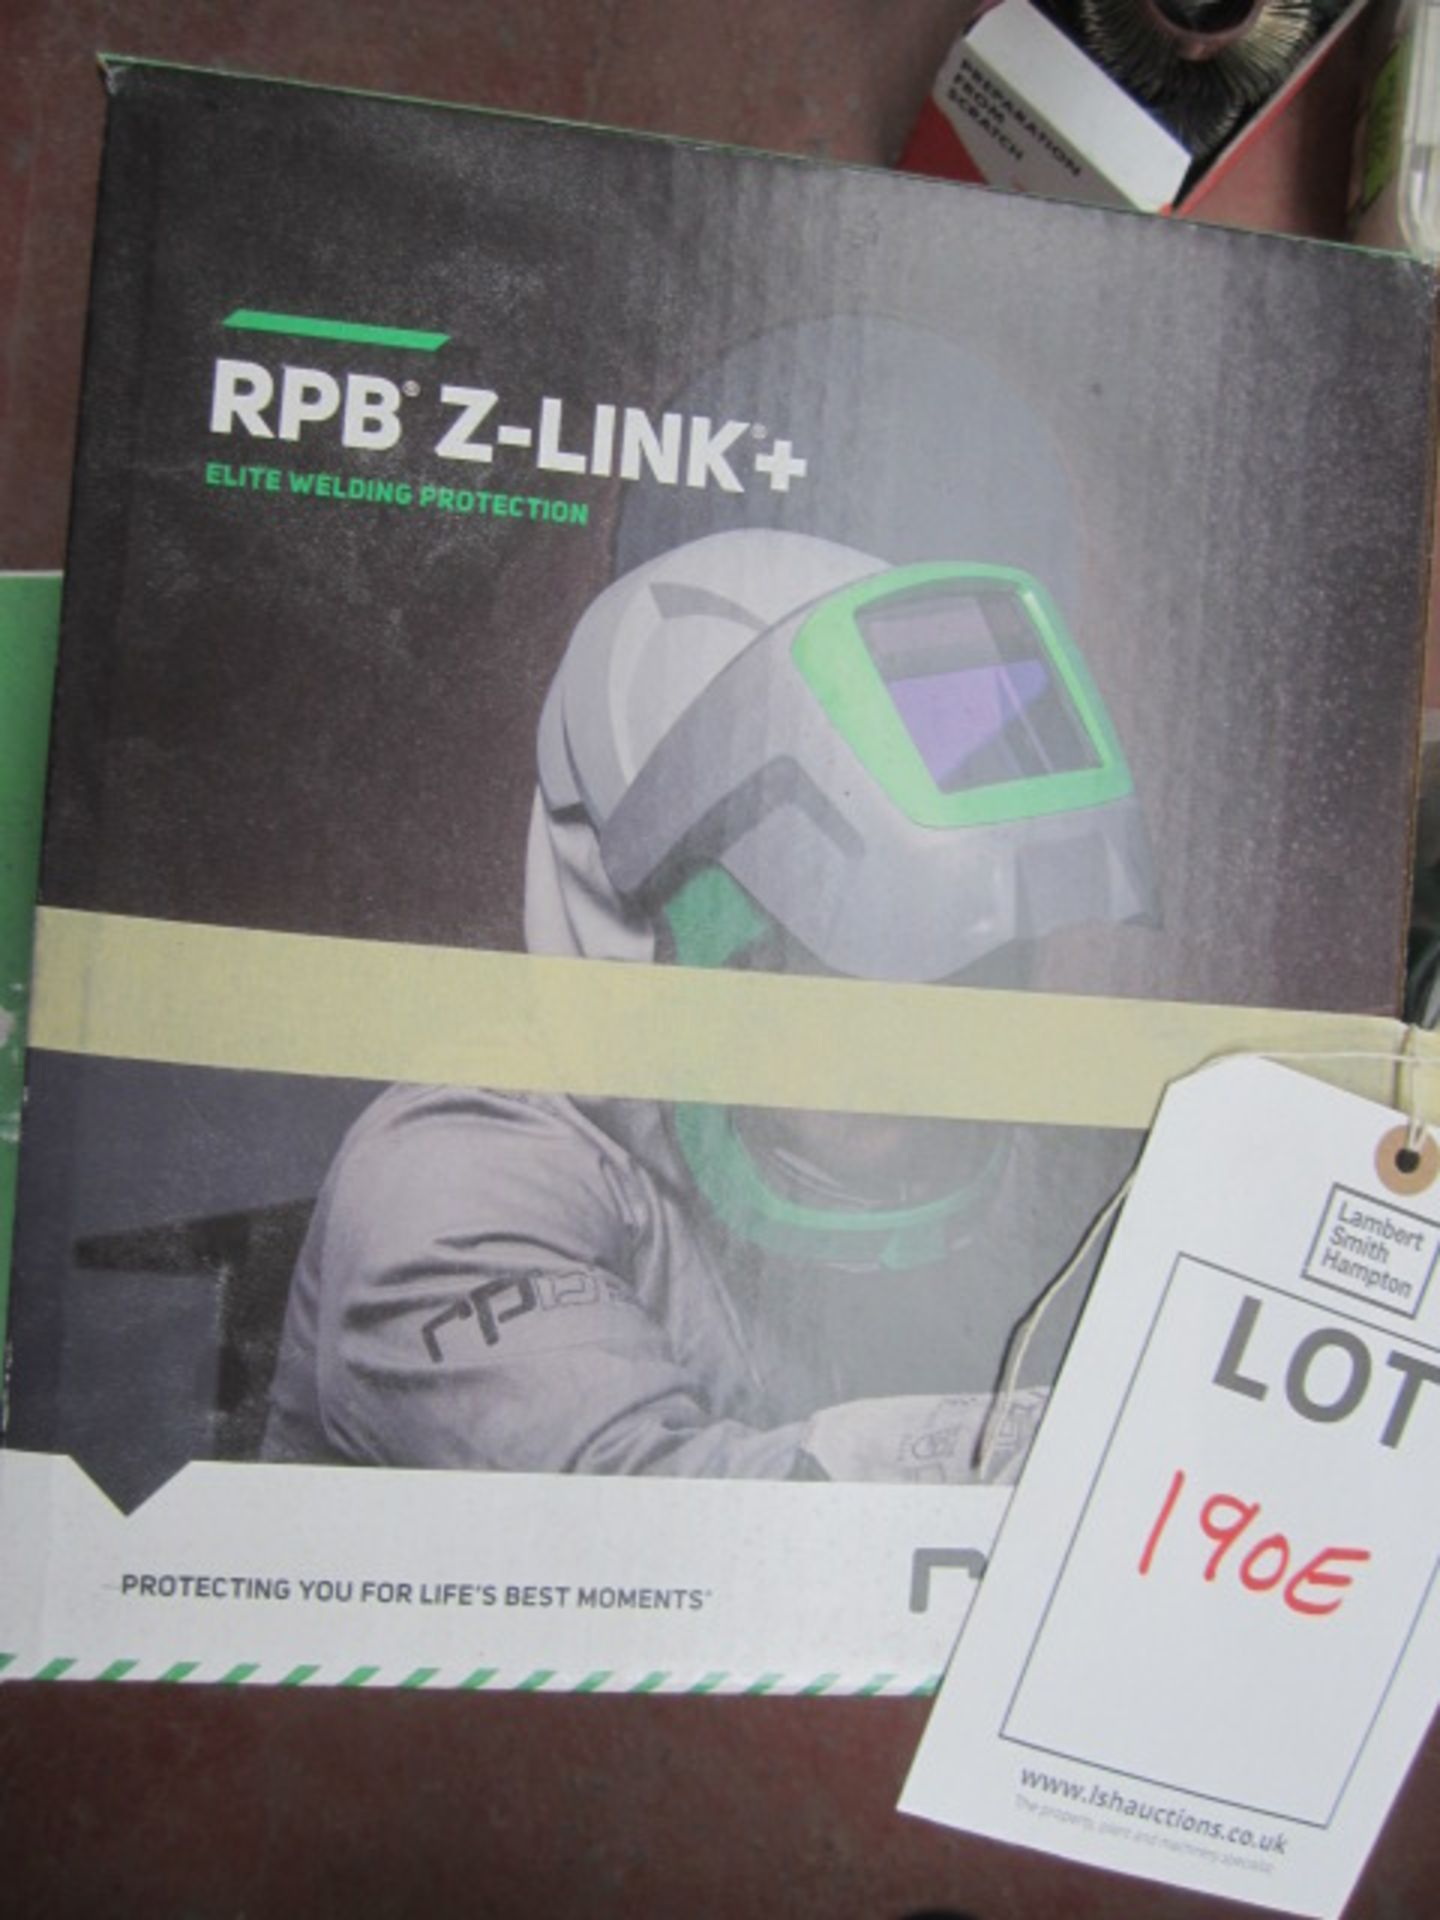 Z-Link+ RPB welding helmet and respirator set - Image 2 of 5